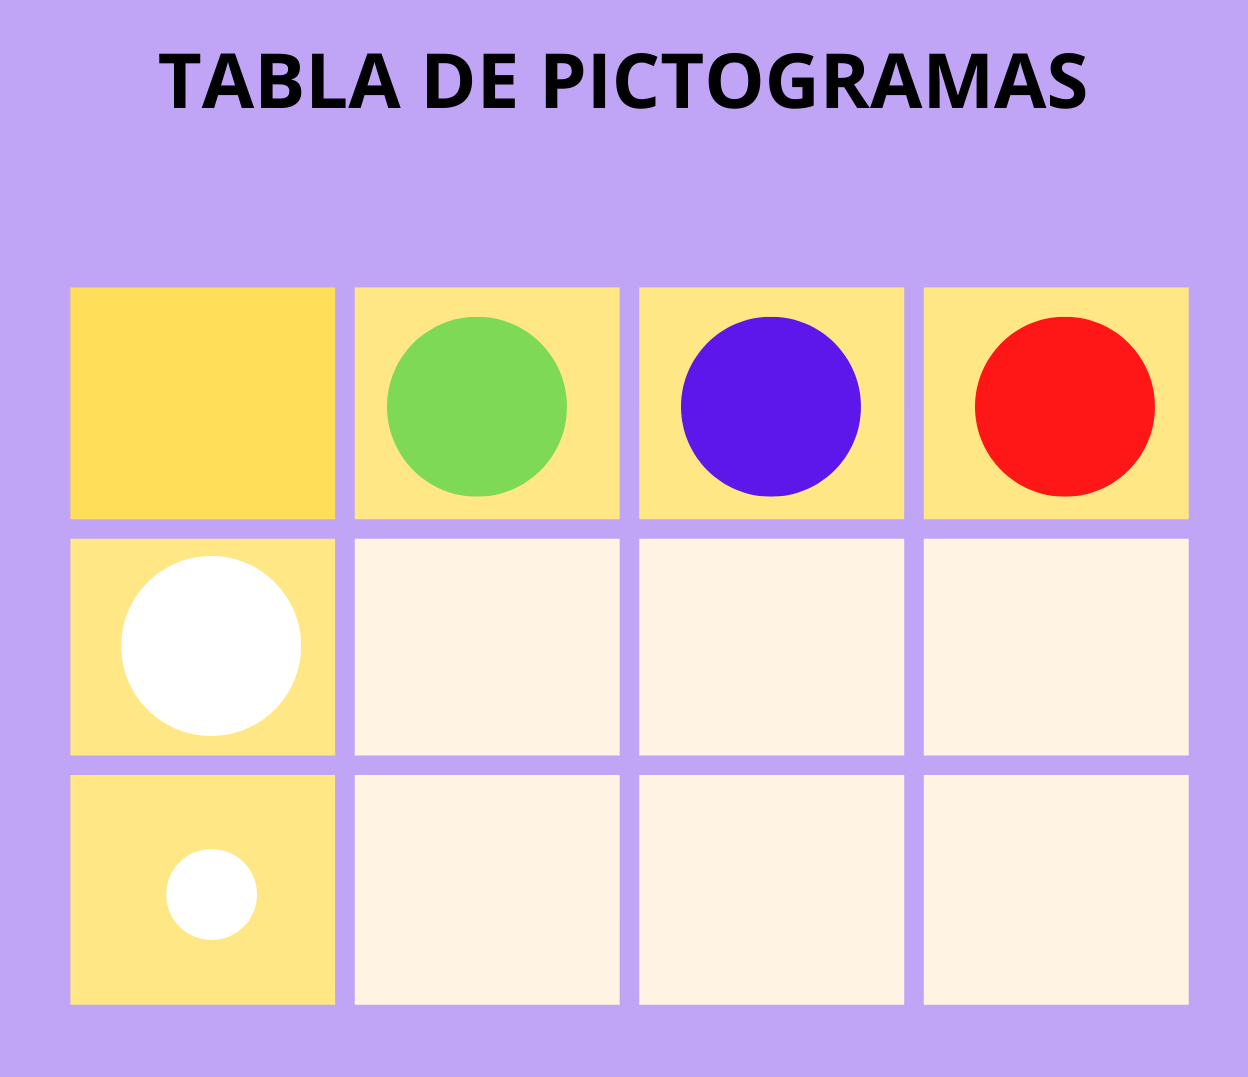 La imagen muestra una tabla de doble entrada de pictogramas con dos variables: tamaño (grande y pequeño) y colores (verde, azul y rojo)